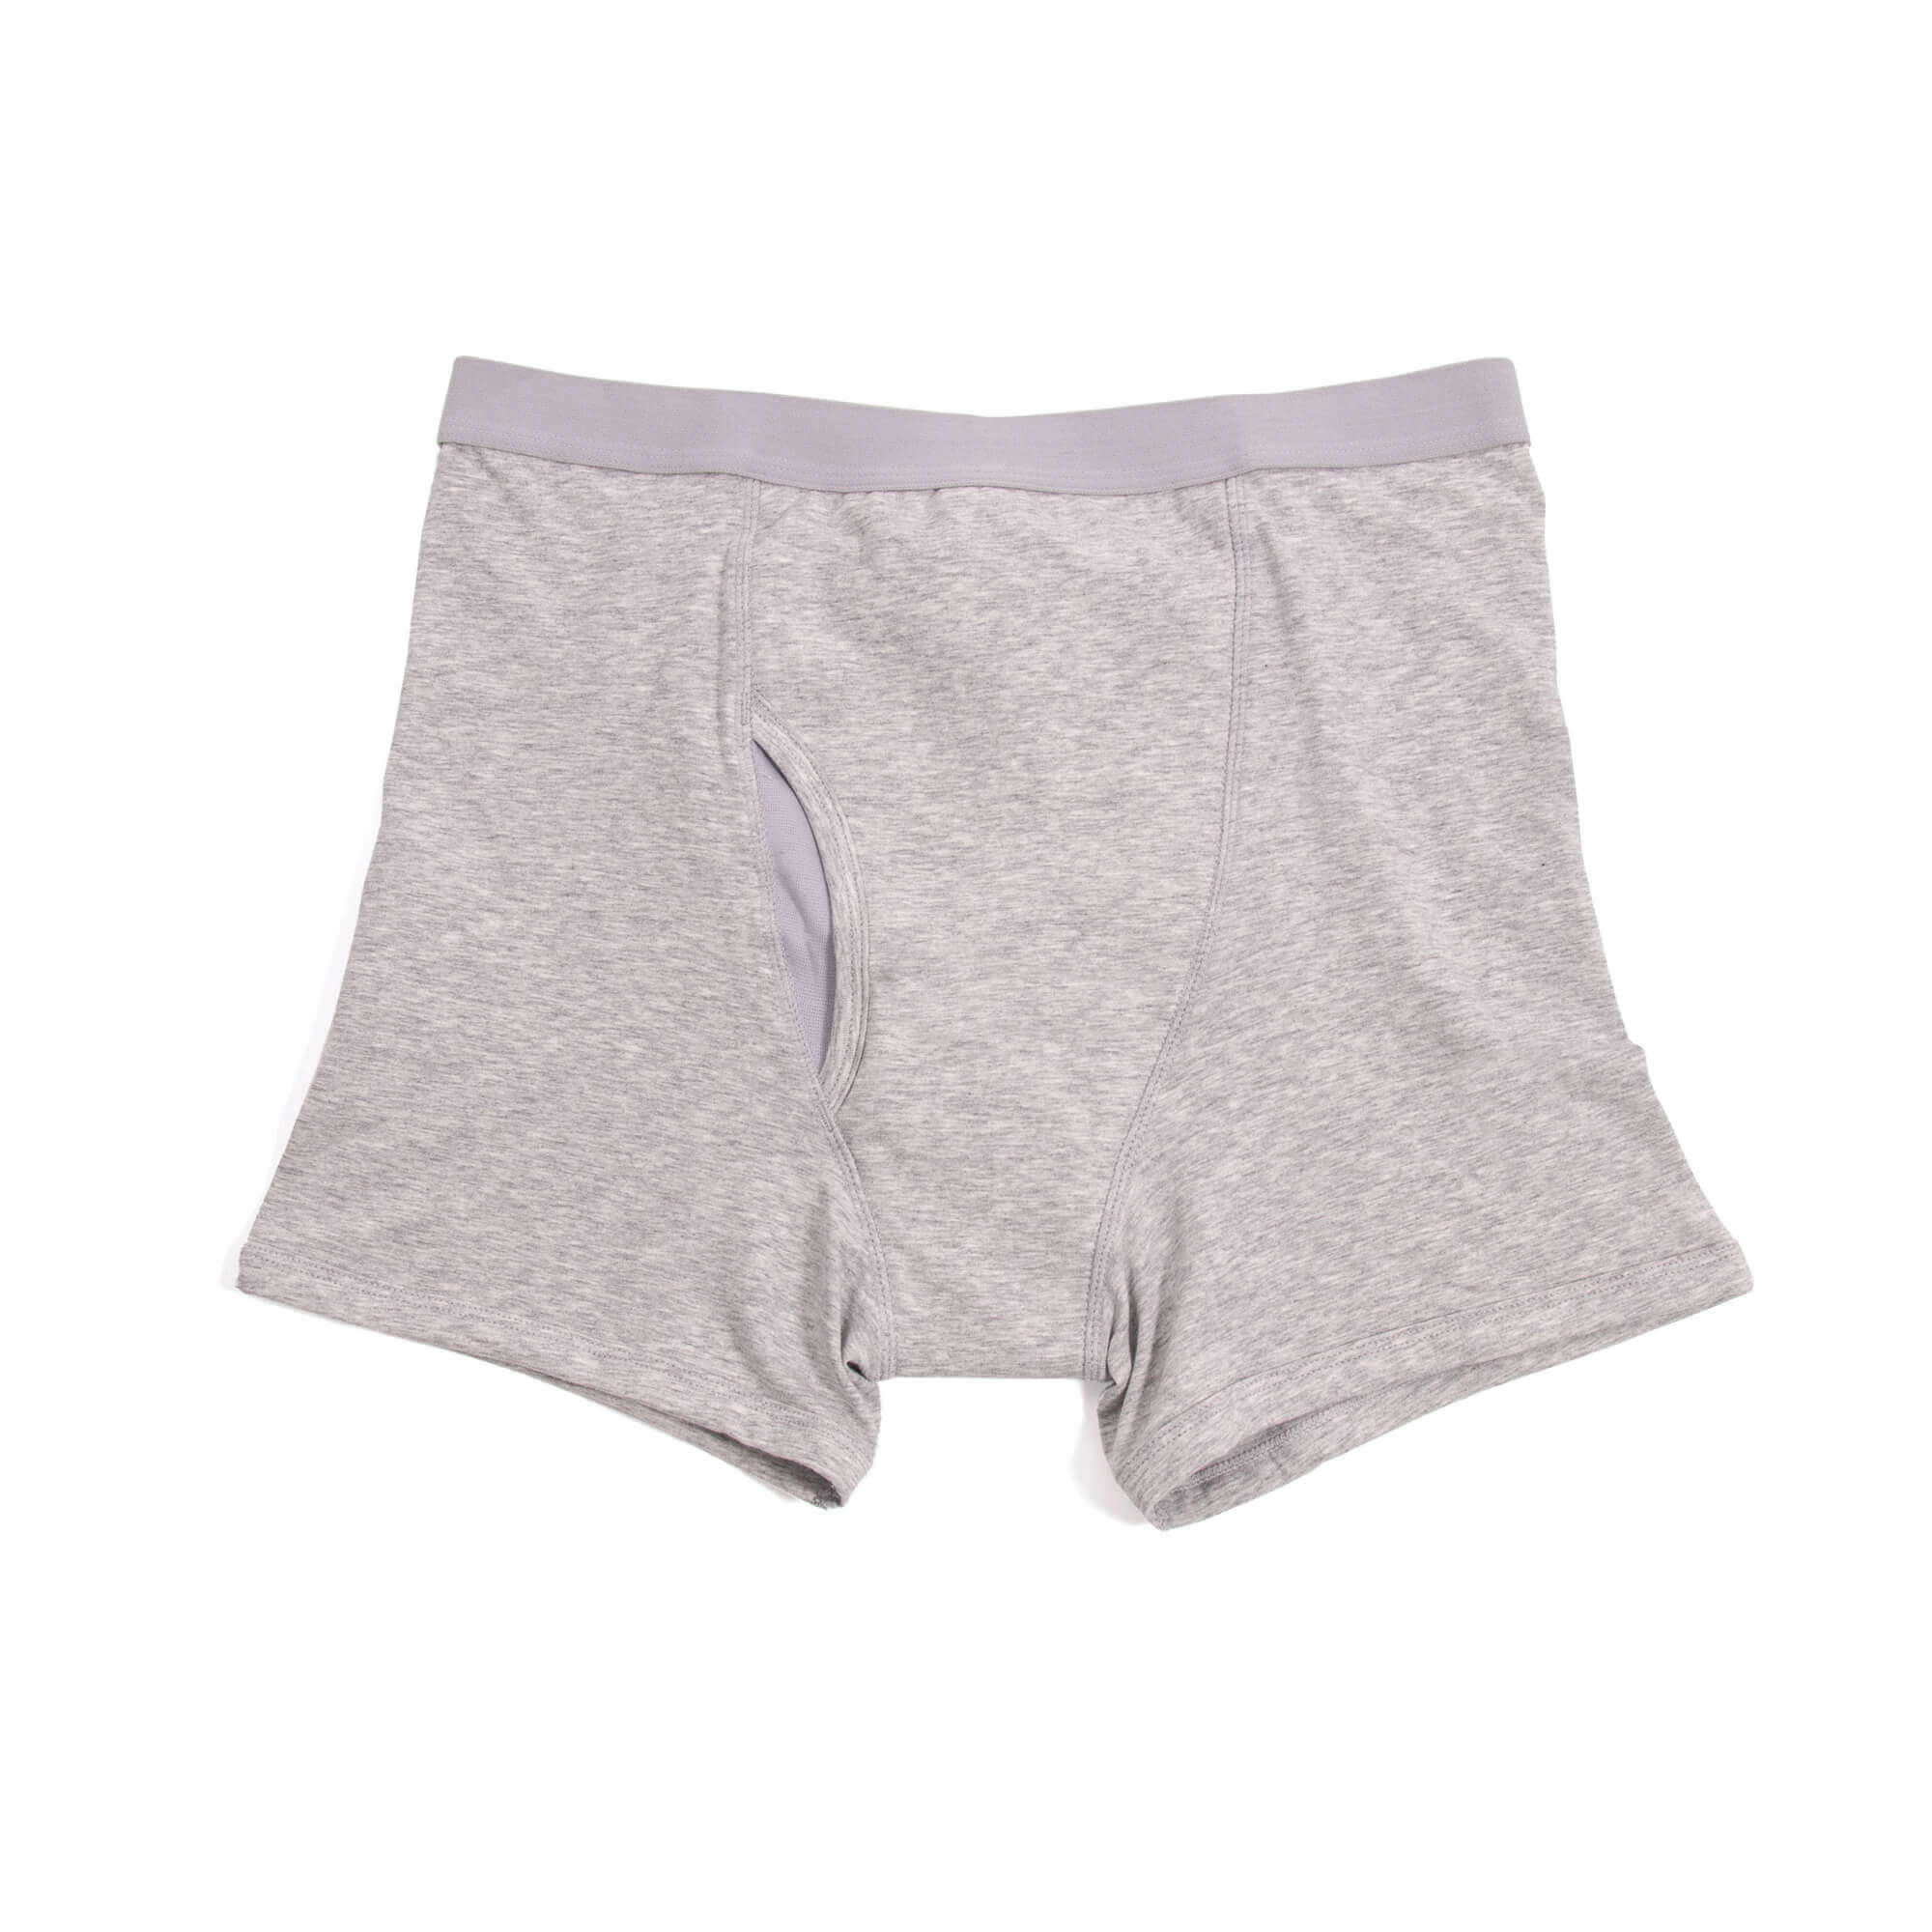 Men's Incontinence Underwear Kalven Grey - bowel leaks